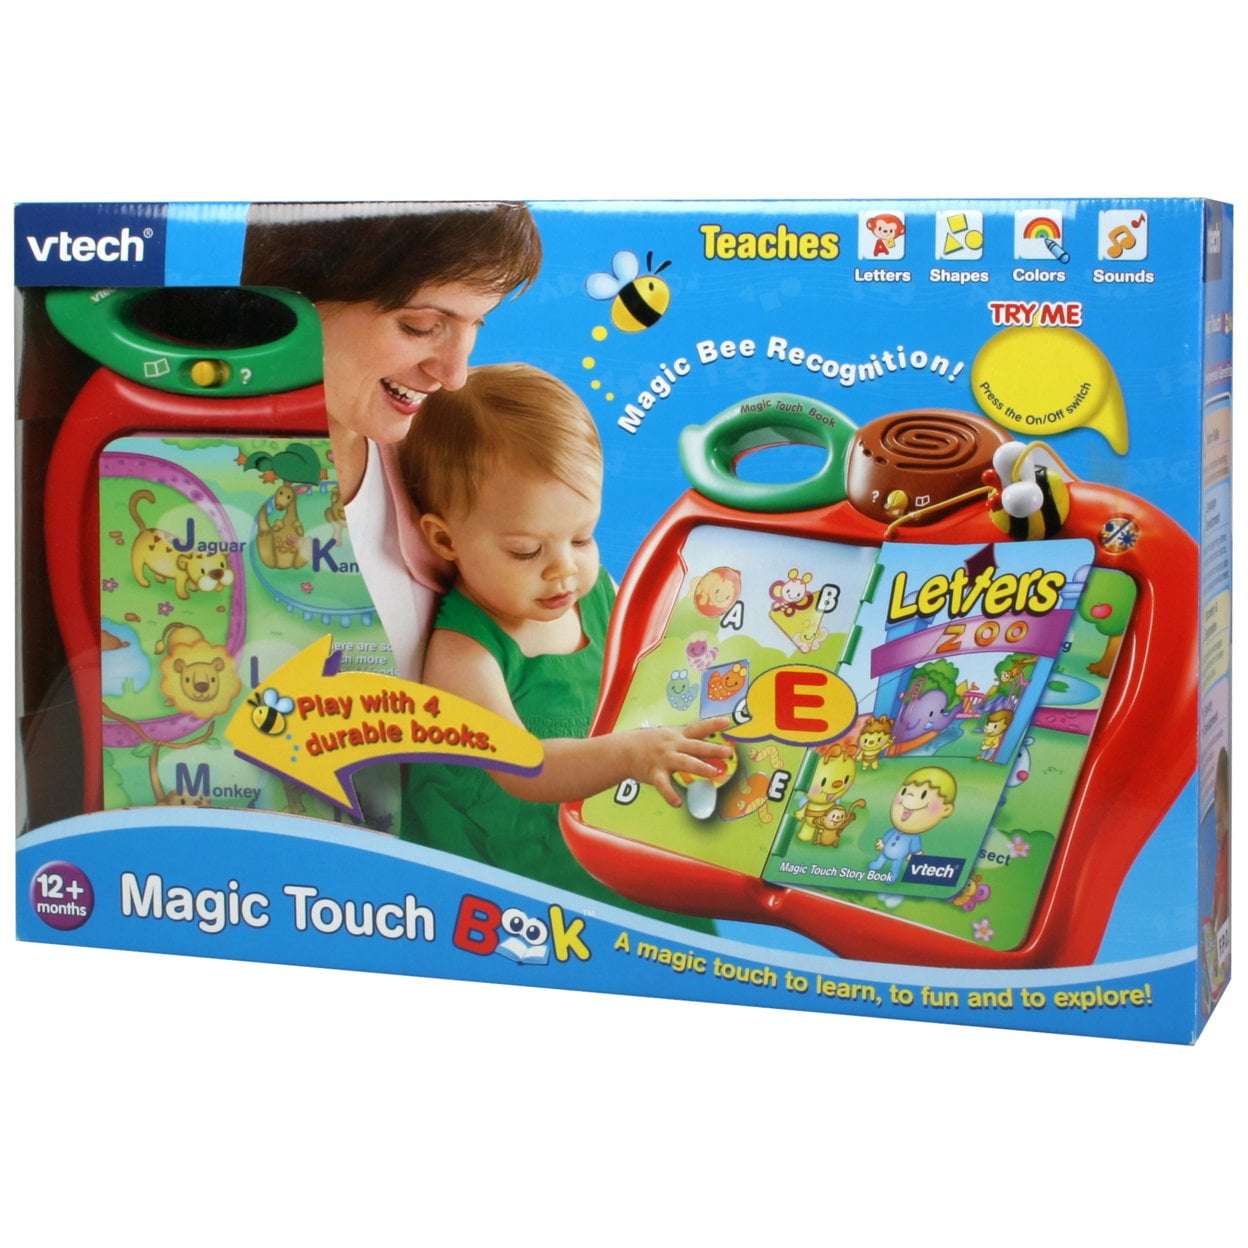 VTech Touch & Teach Busy Books  Vtech, Busy book, Preschool games